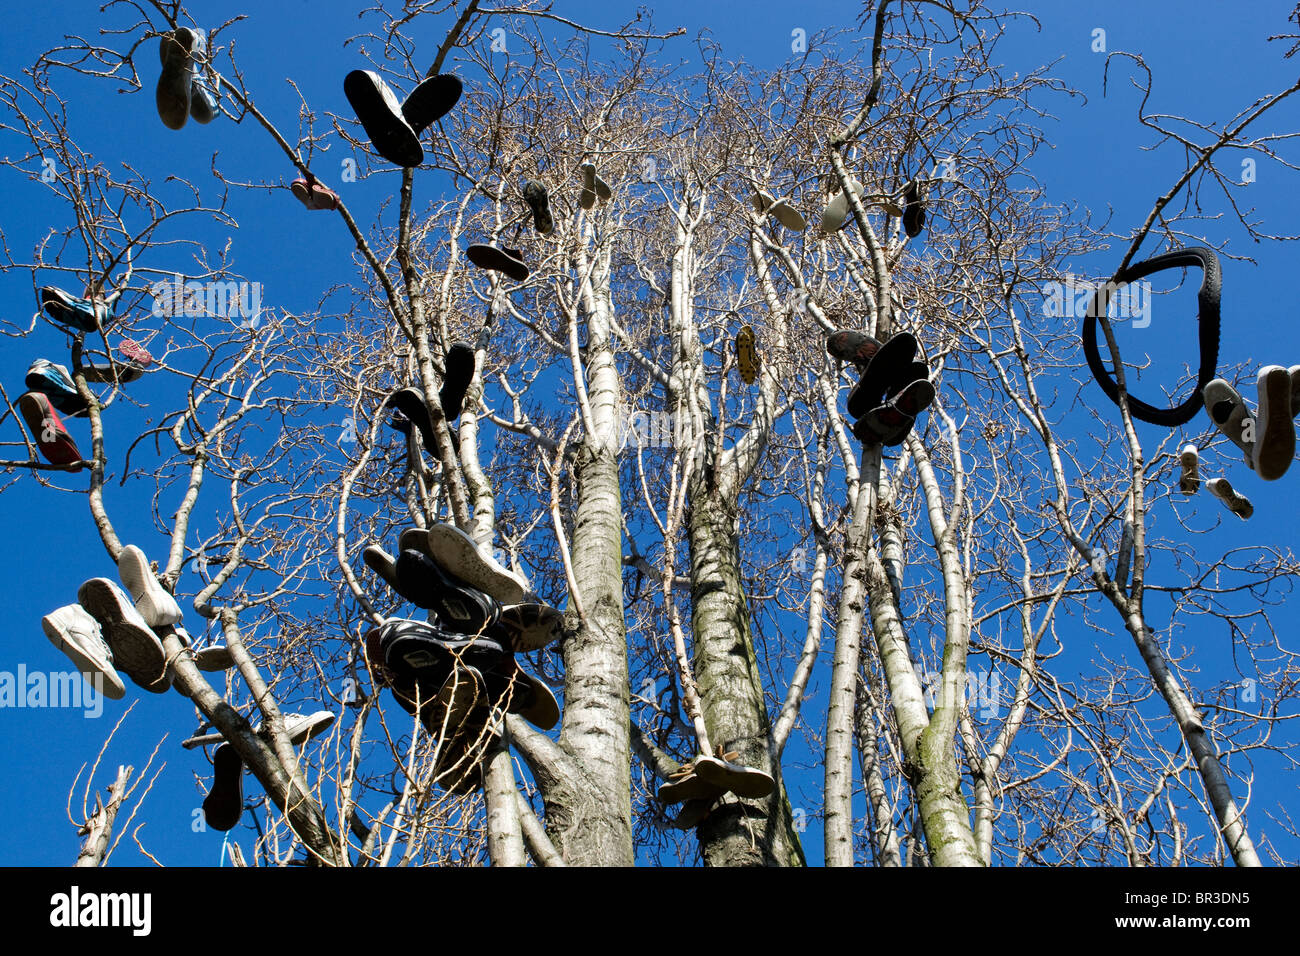 Bäume mit vielen Schuhen aufgehängt zeigen die Lage wo Schieber verkaufen Drogue in der Nähe von Brick Lane in London. Stockfoto